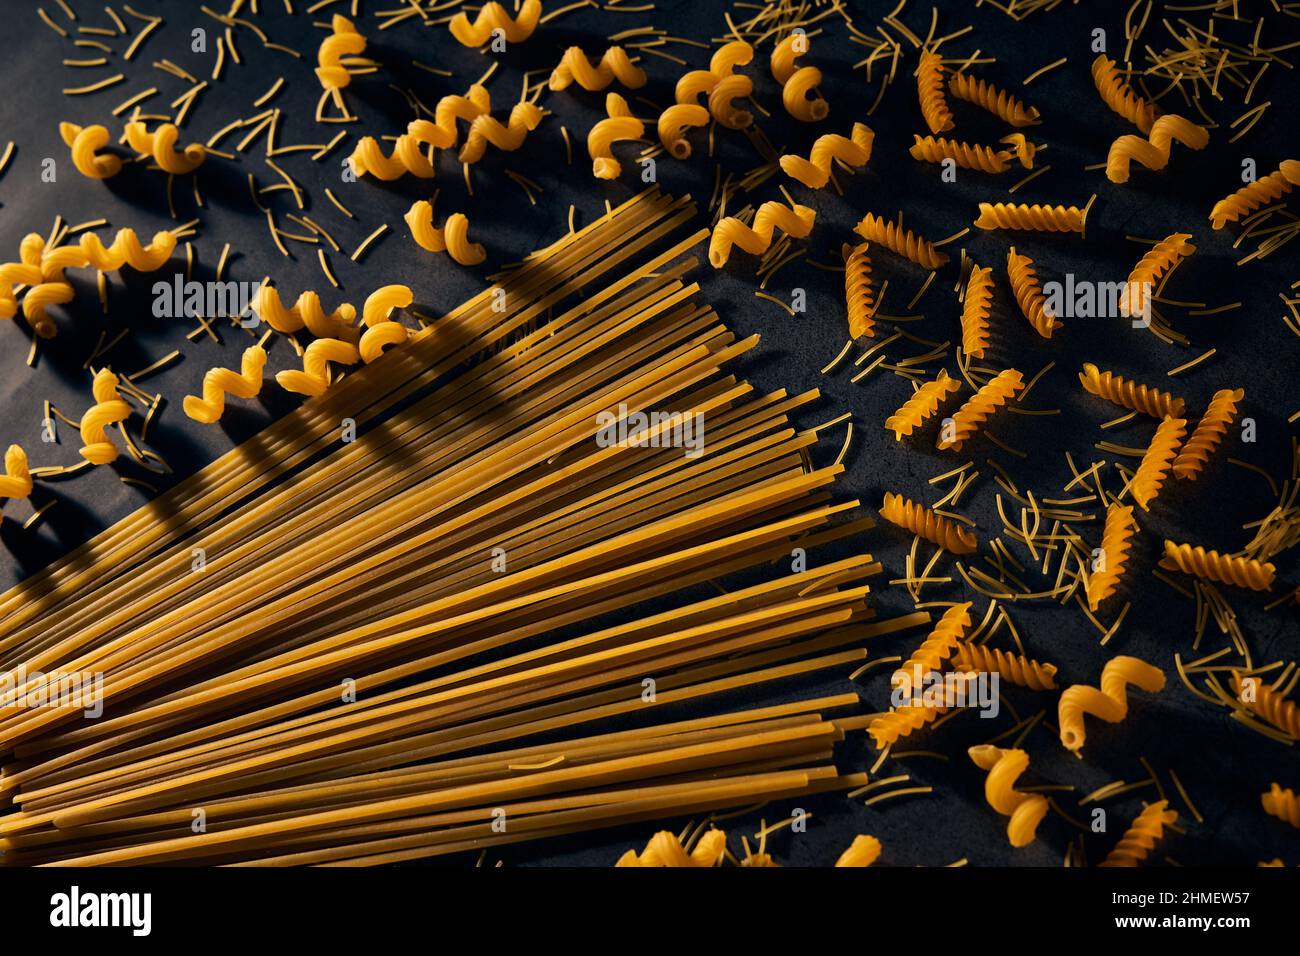 Motif avec différents types de pâtes et spaghetti sur fond noir. Concept de cuisine italienne. Banque D'Images